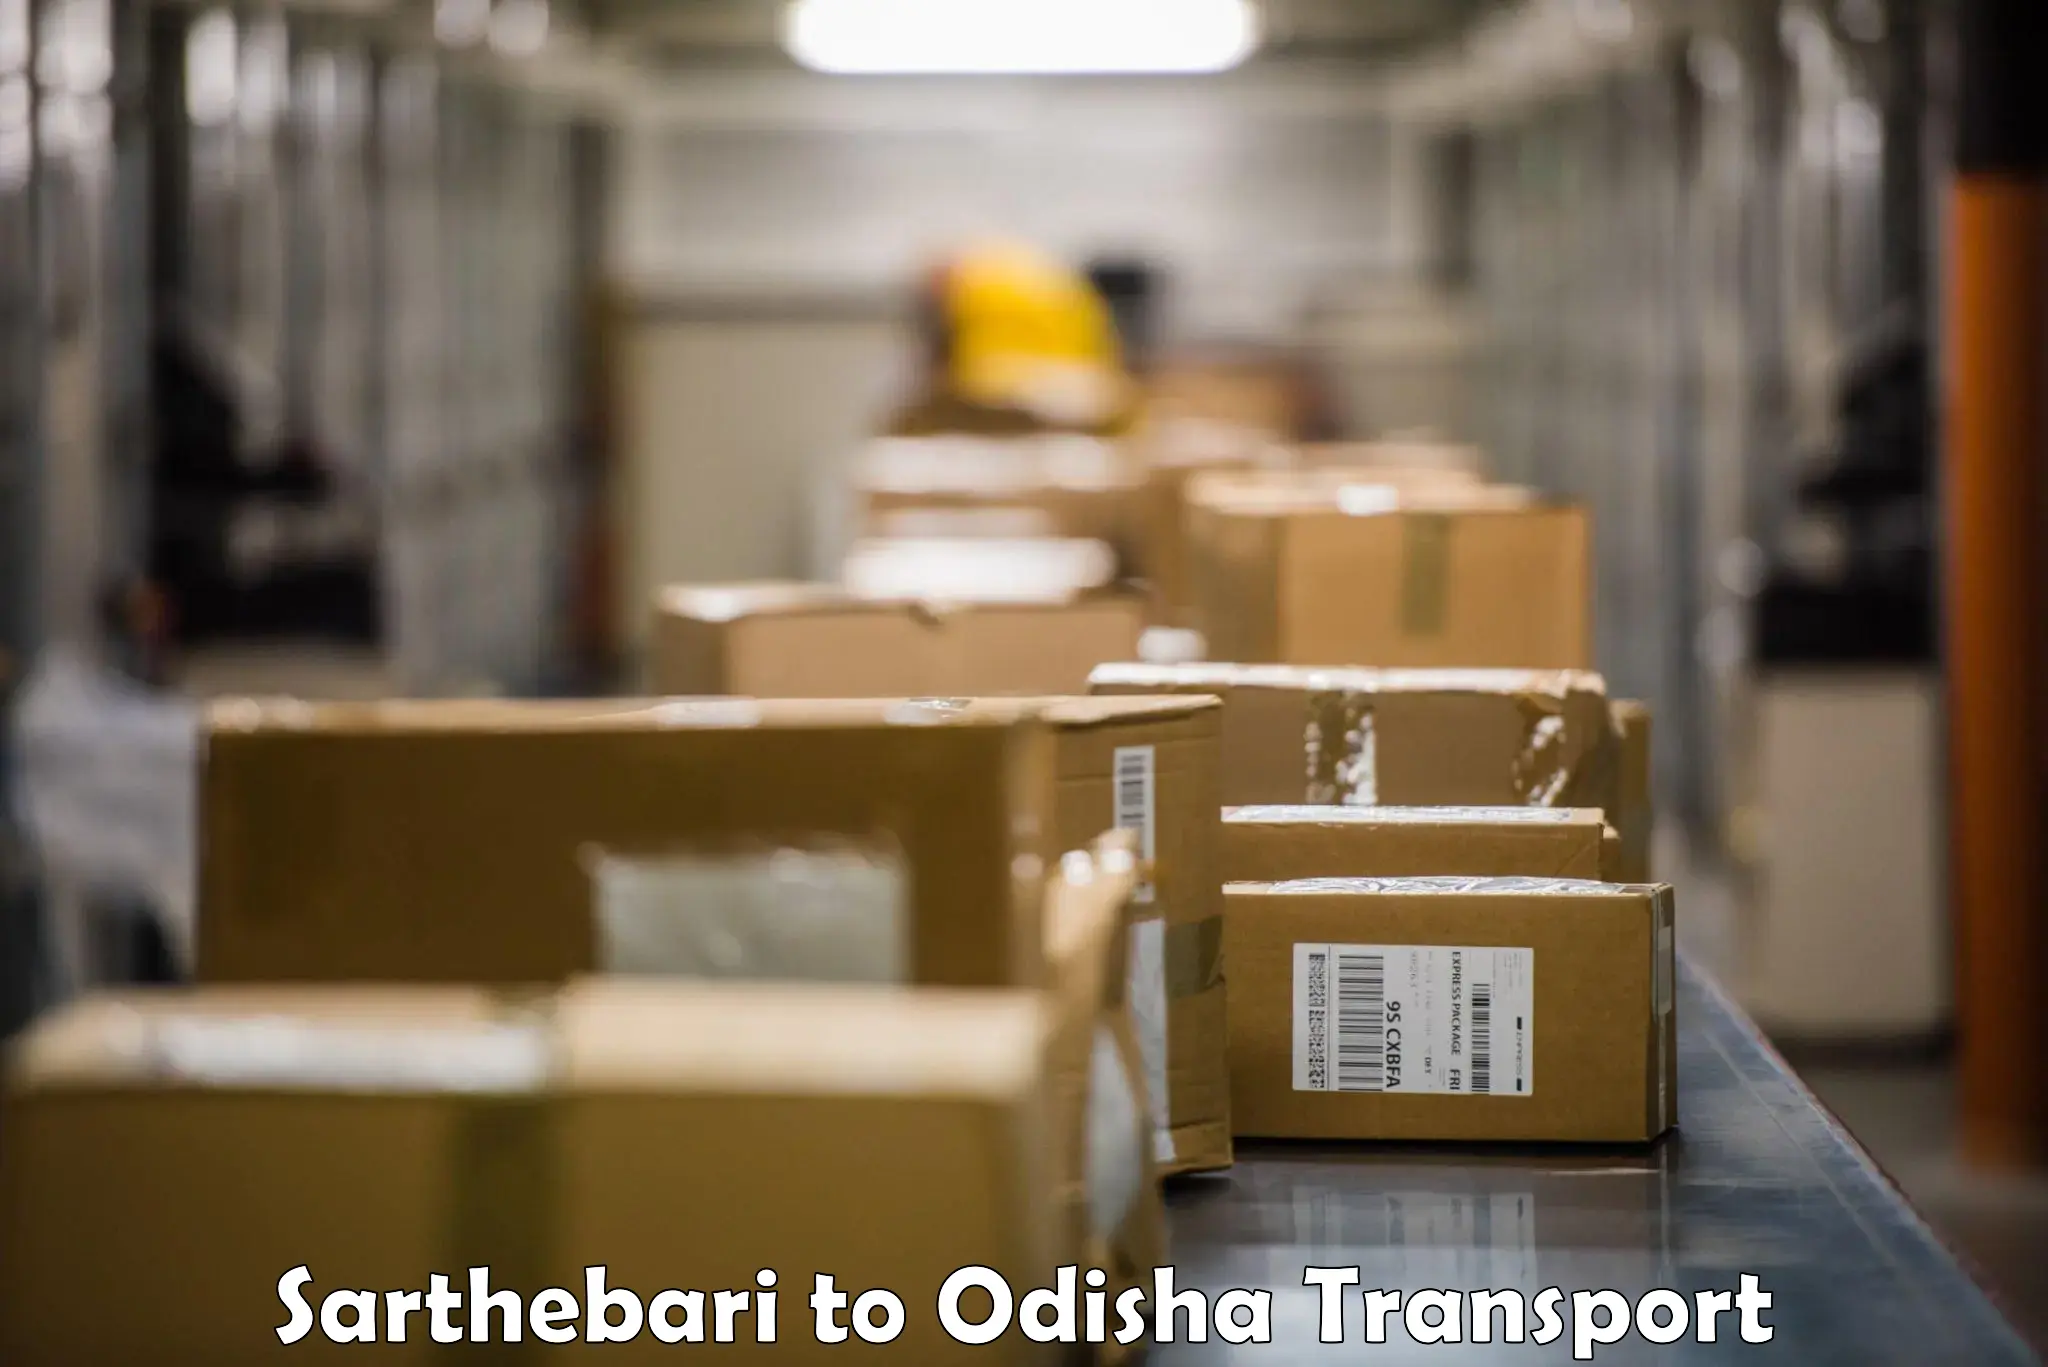 Furniture transport service Sarthebari to Paradip Port